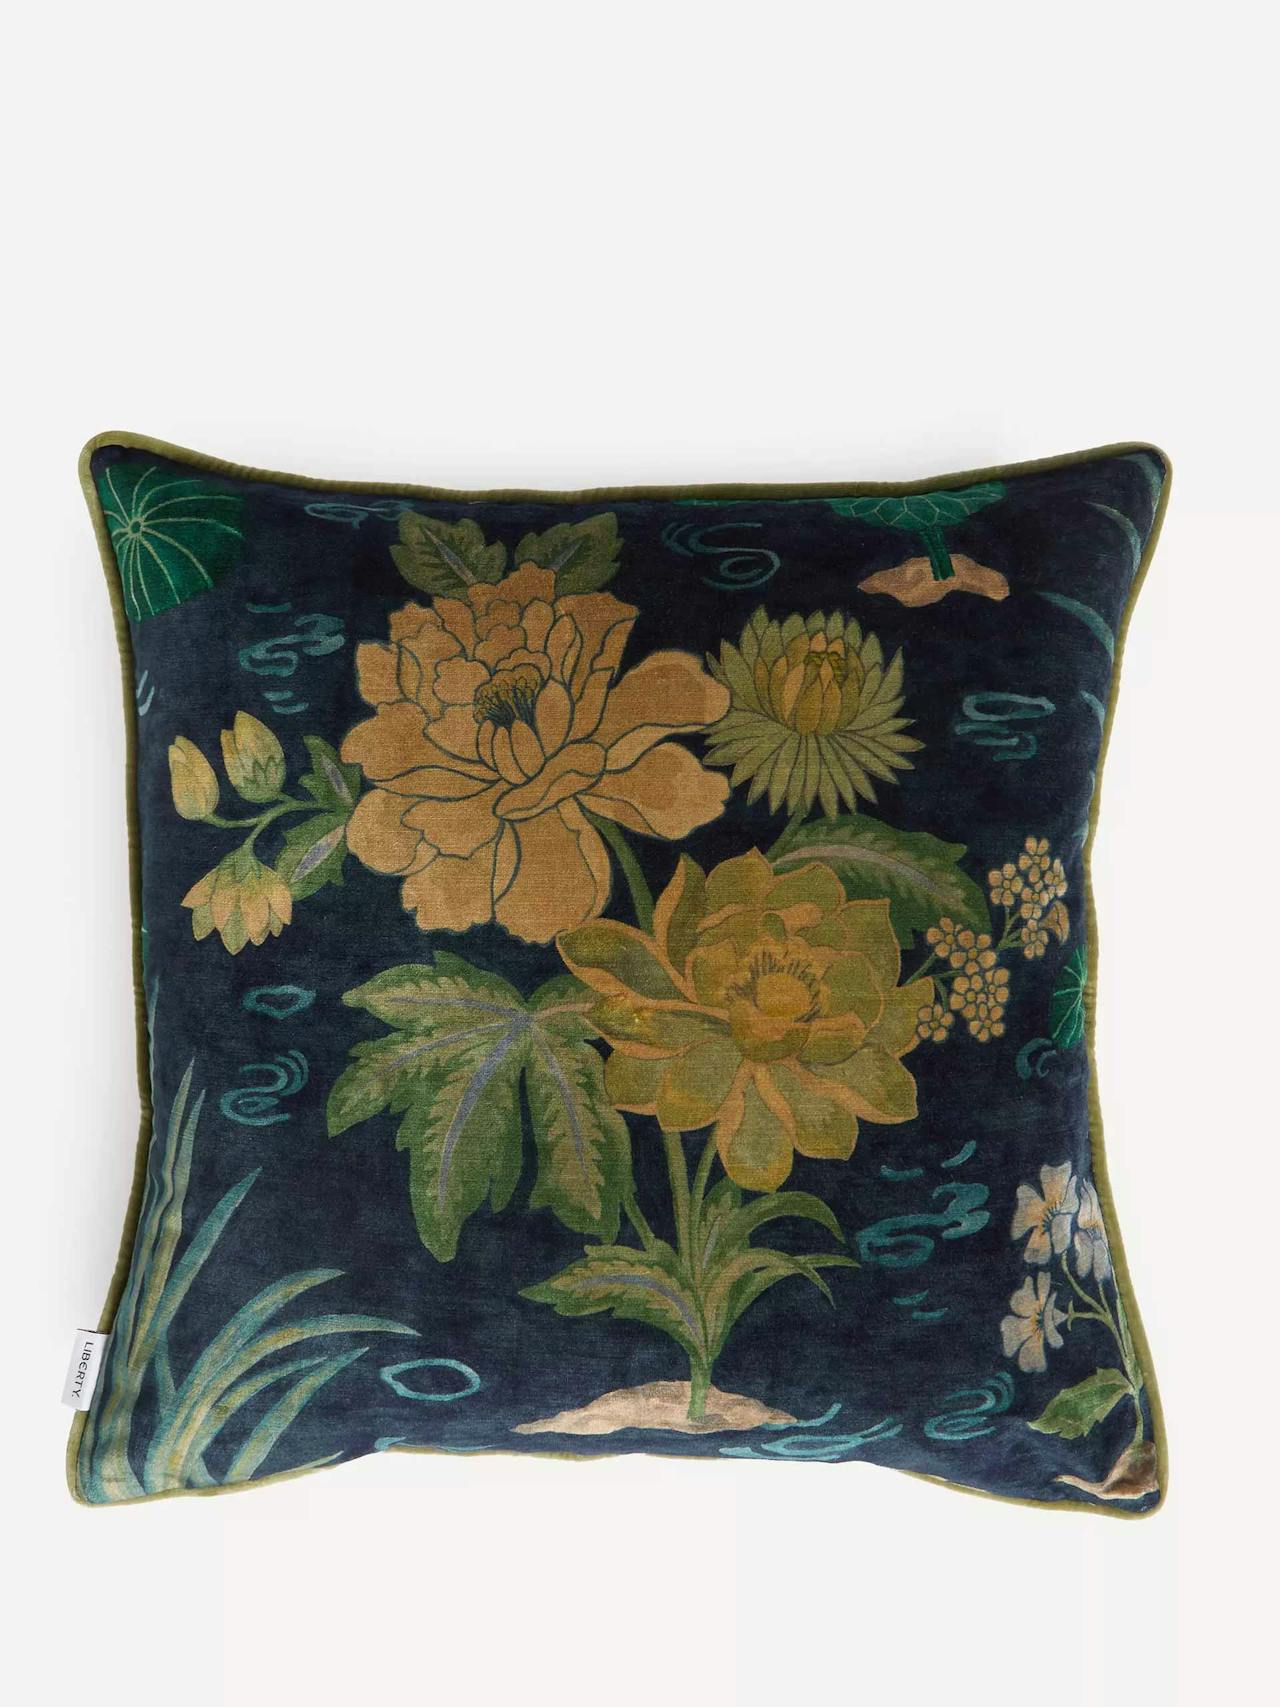 Lotus garden velvet square cushion in jade